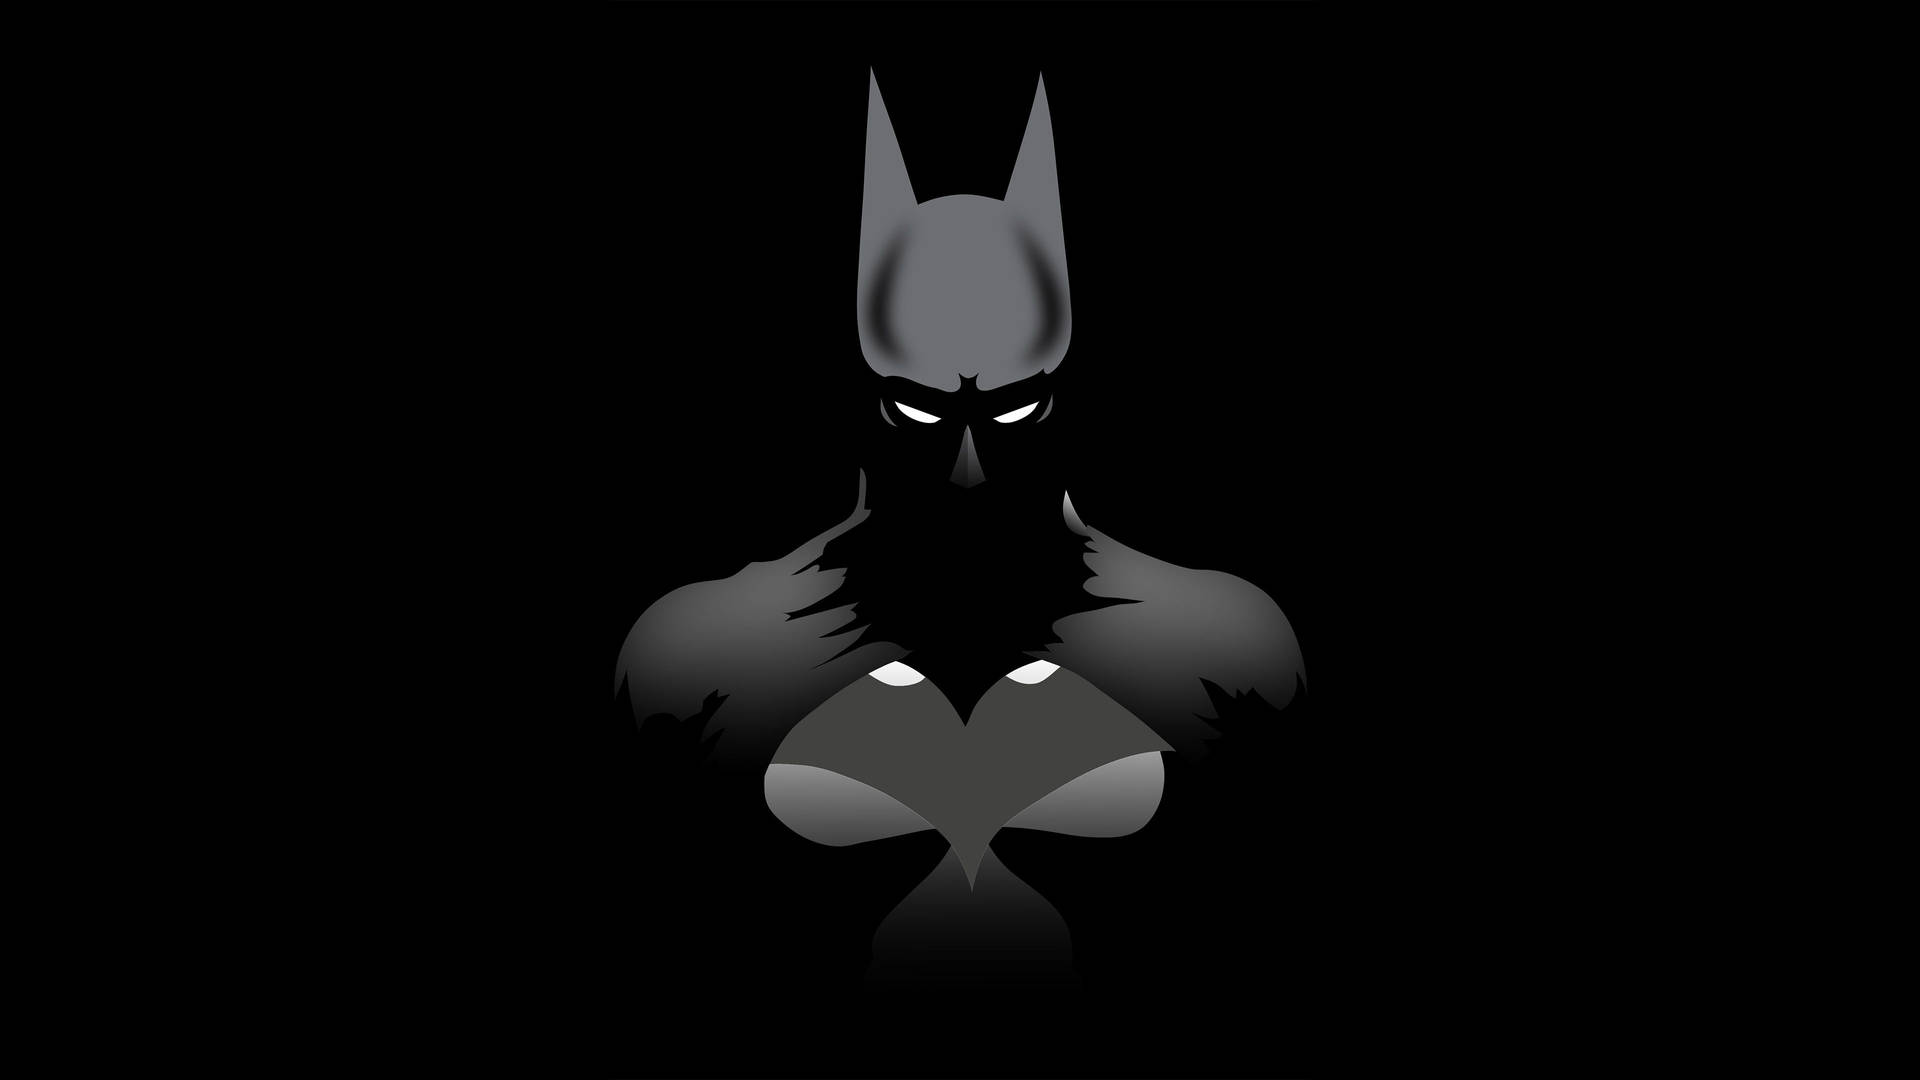 Dark Minimalist Batman Background